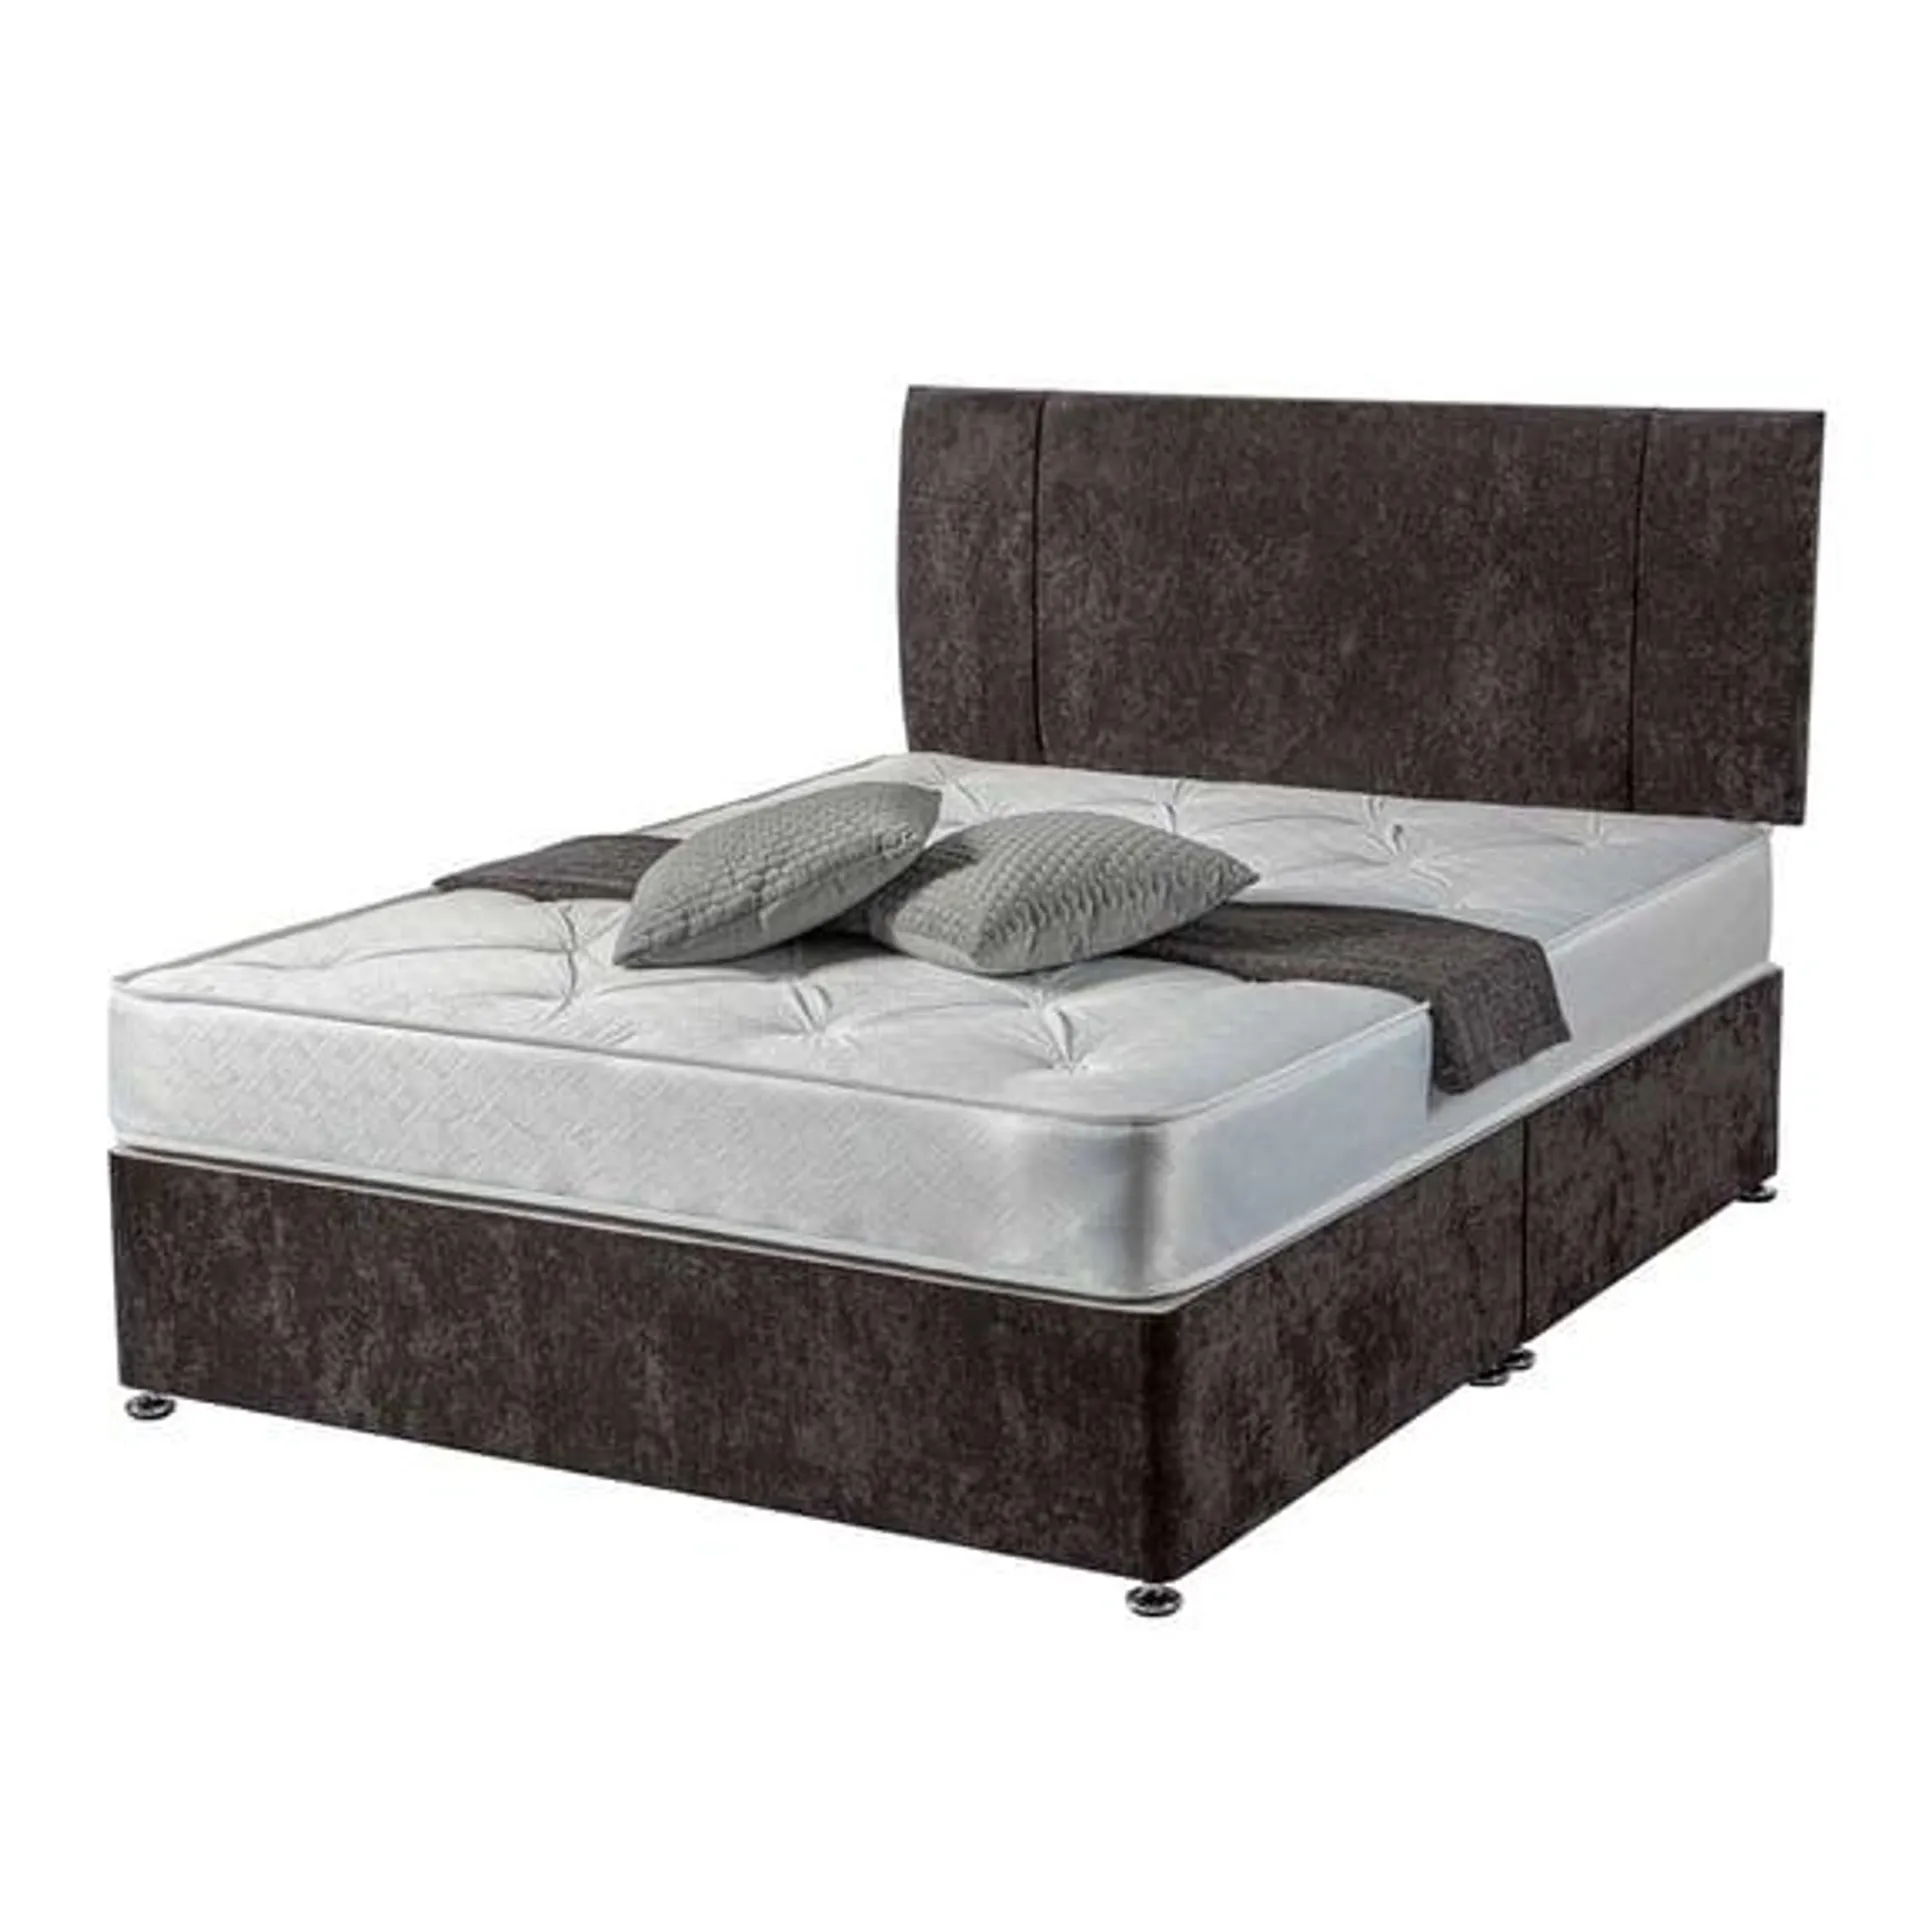 Sleepright Ava Deluxe Divan Bed